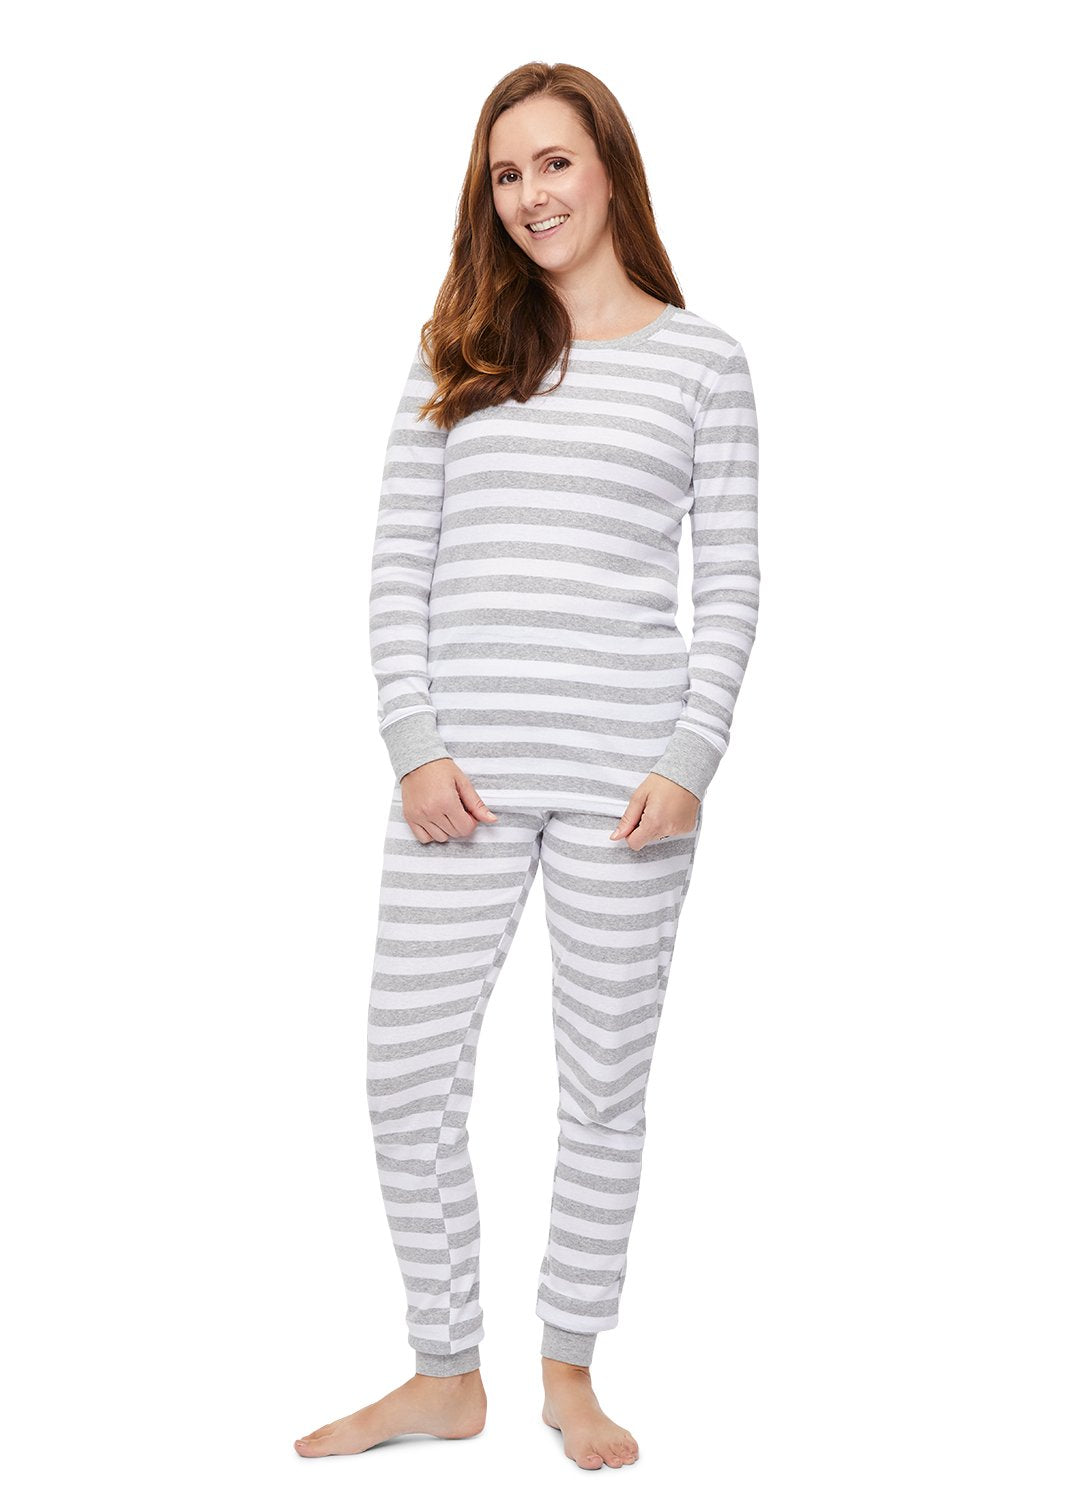 Woman smiling and wearing Grey Stripe Pajama Set